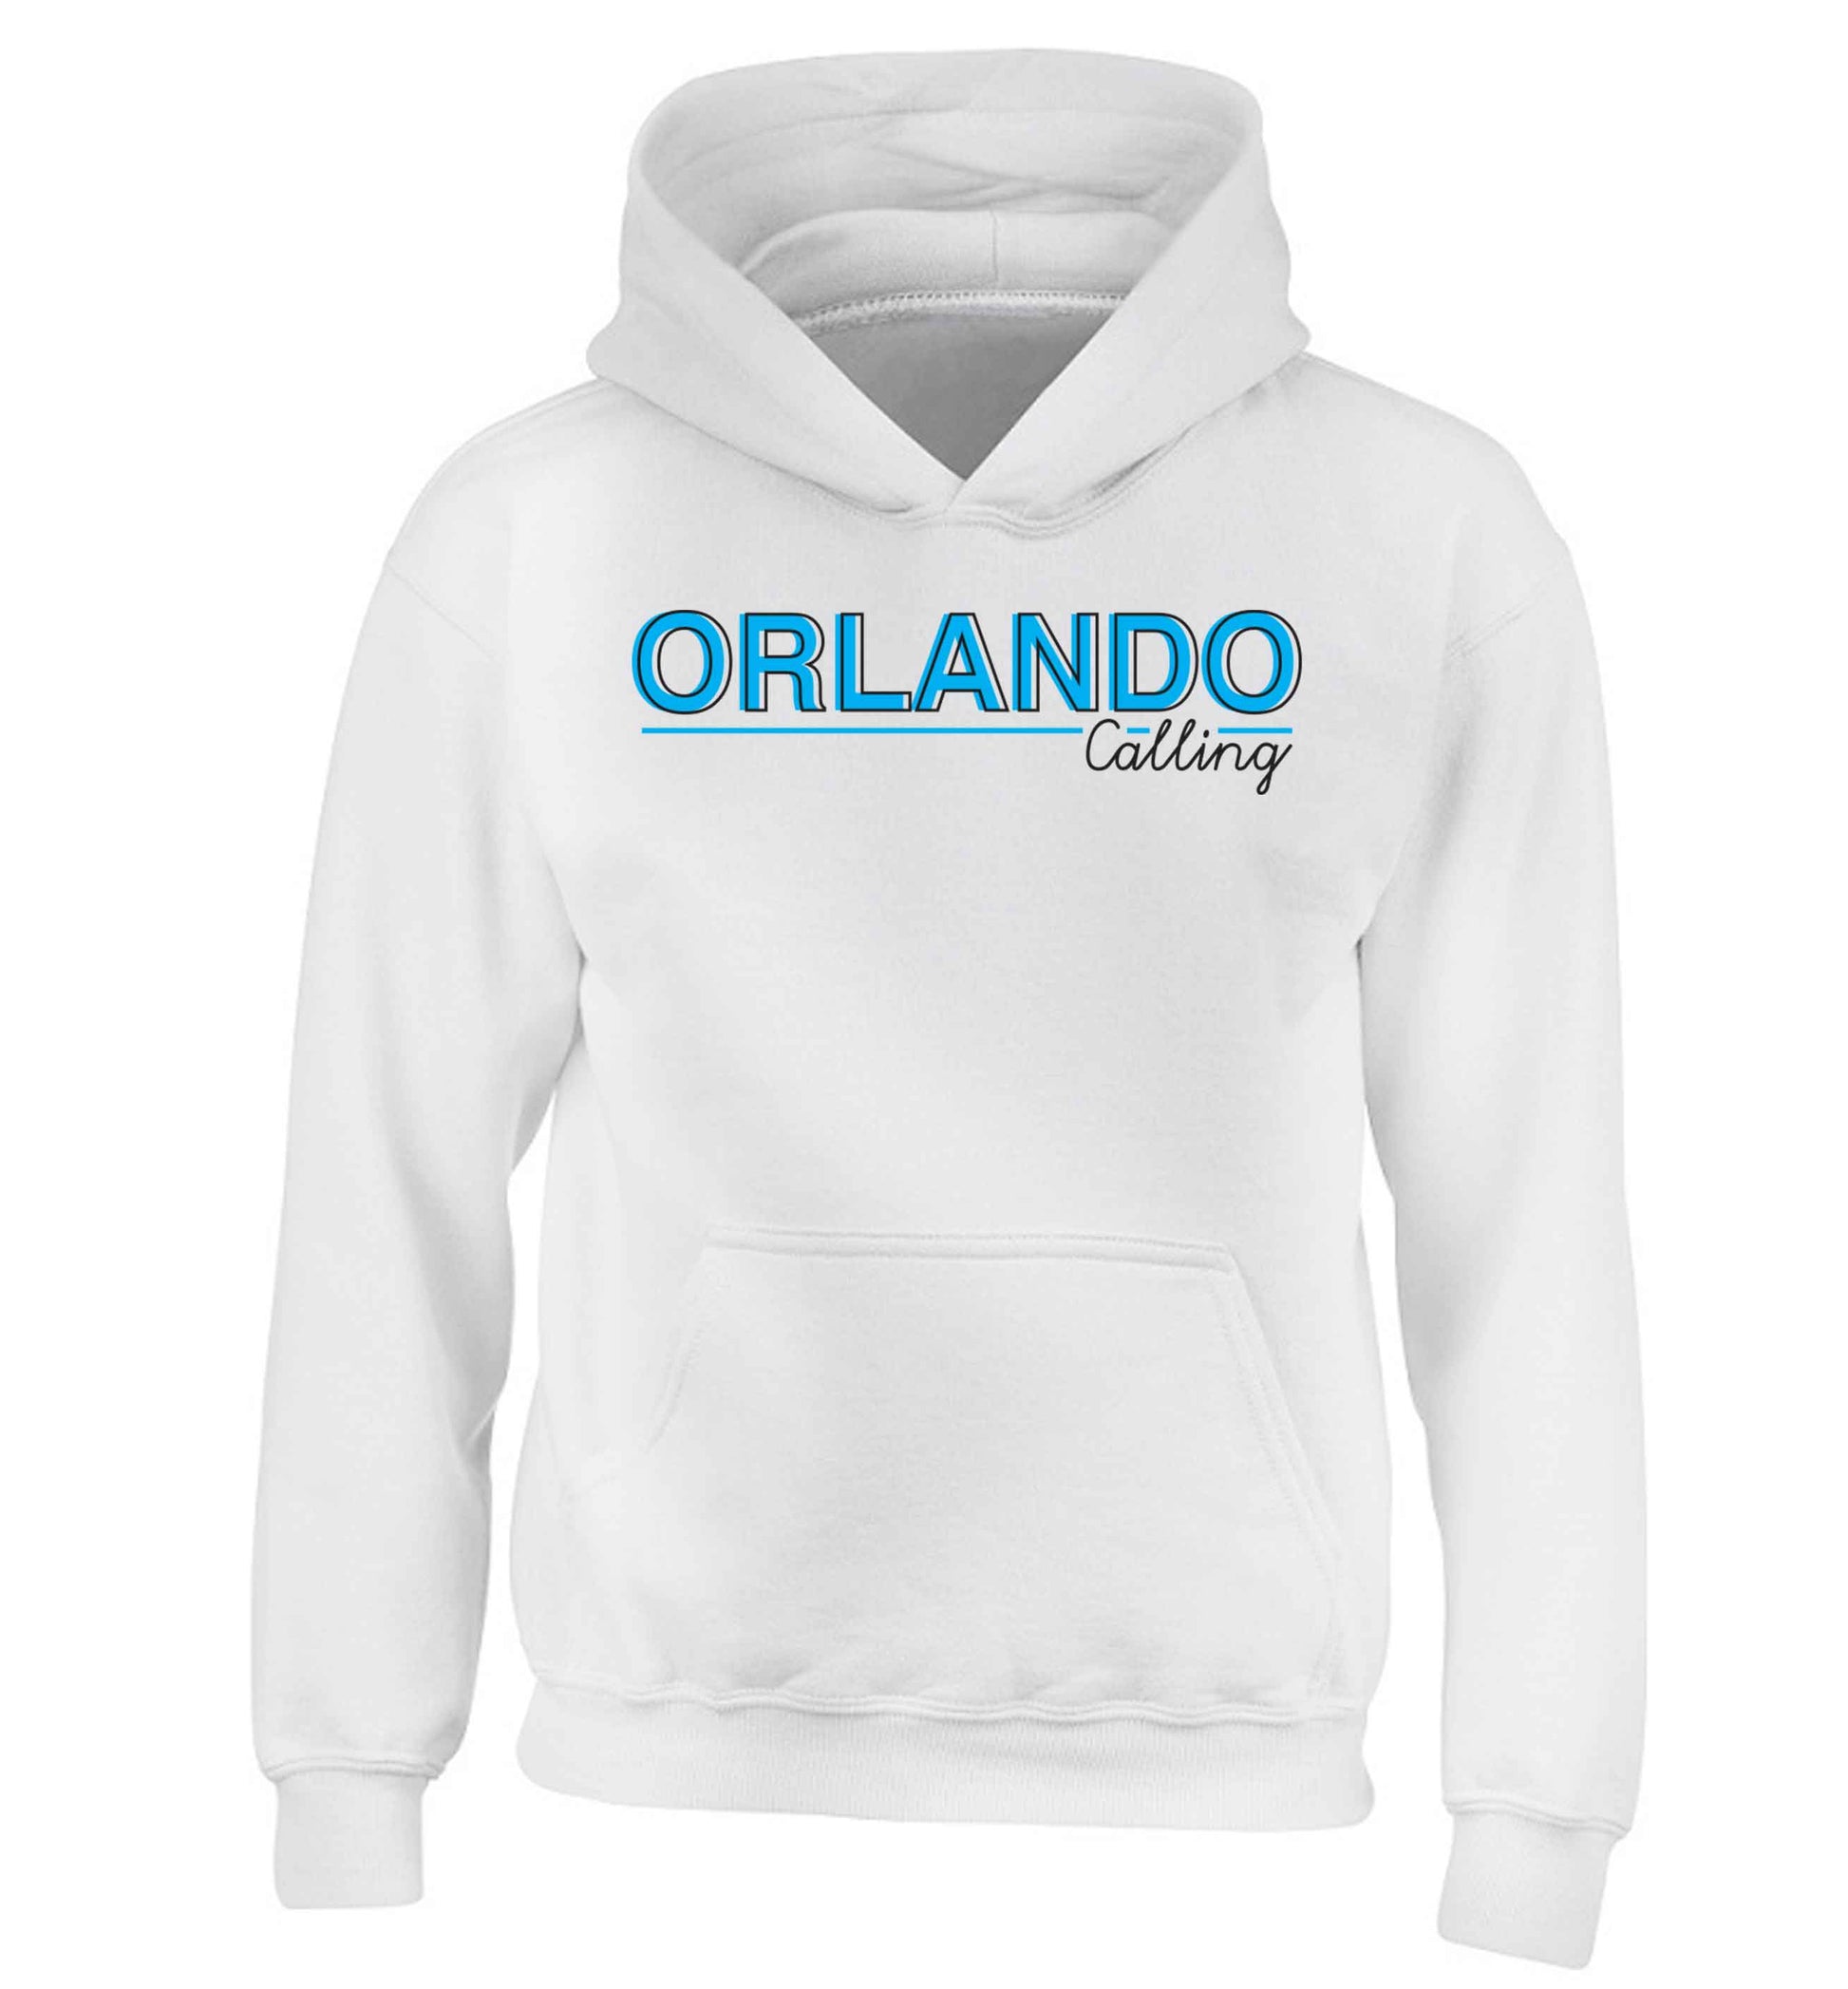 Orlando calling children's white hoodie 12-13 Years